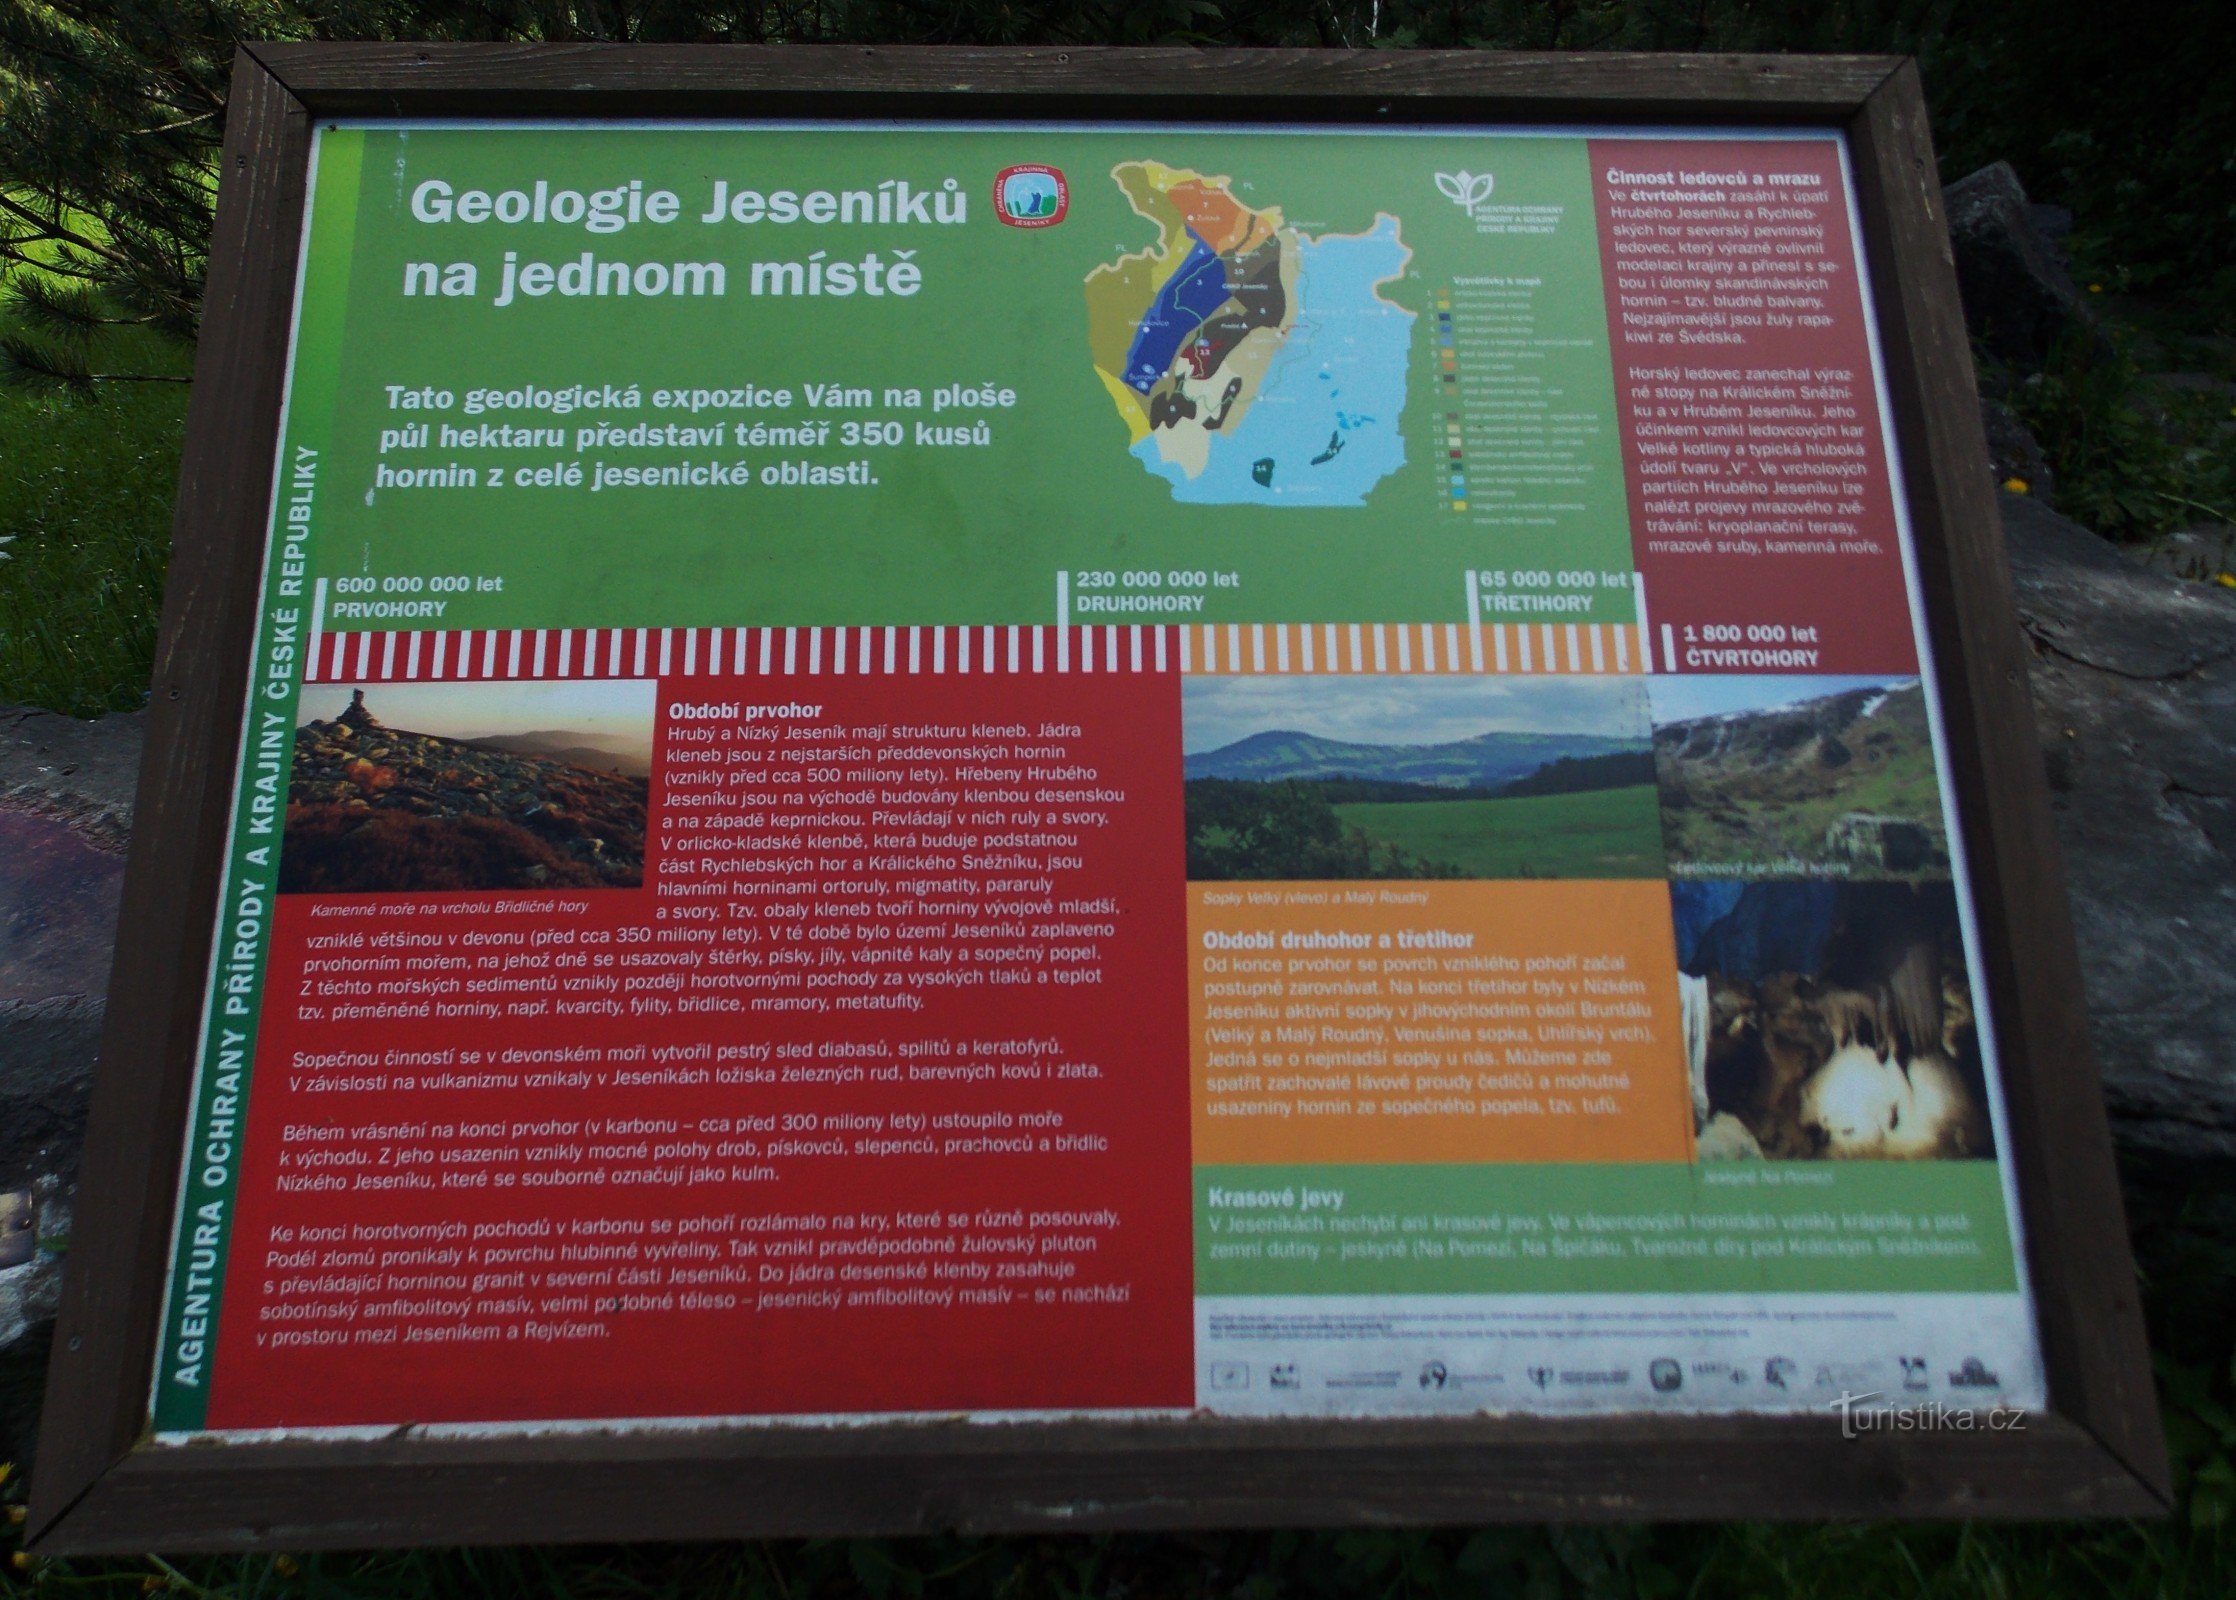 Et interessant punkt i Karlová Studánka - en geologisk udstilling af sten